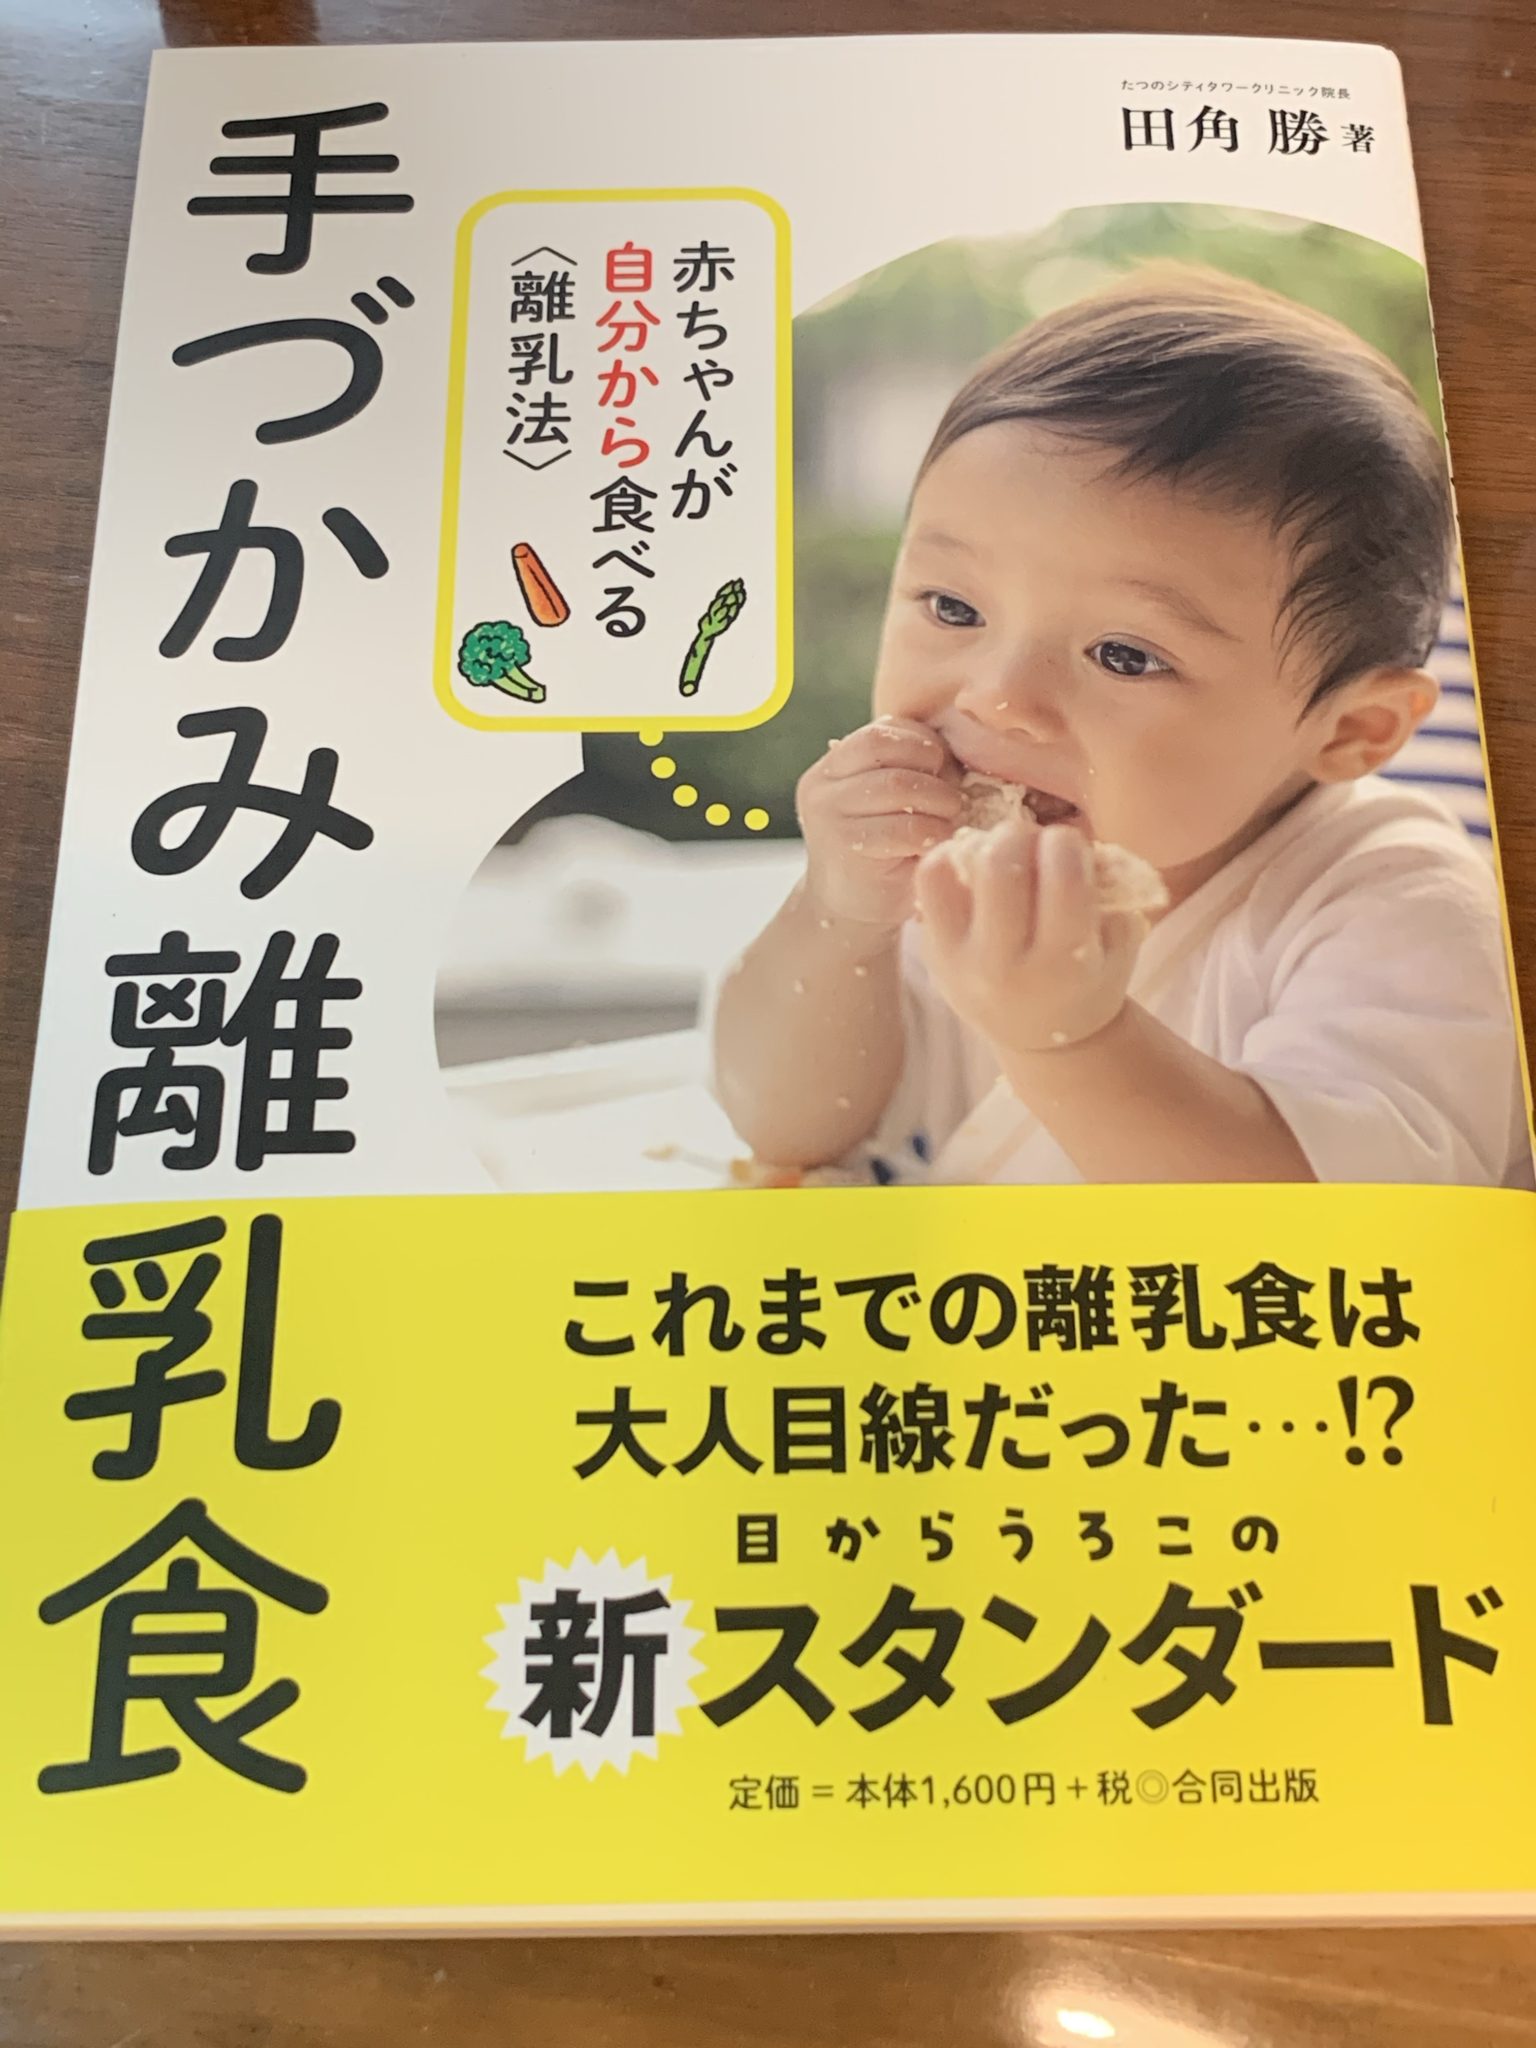 書籍 手づかみ離乳食 赤ちゃんが自分から食べる離乳法 活動報告 摂食嚥下障害児 親の会 つばめの会